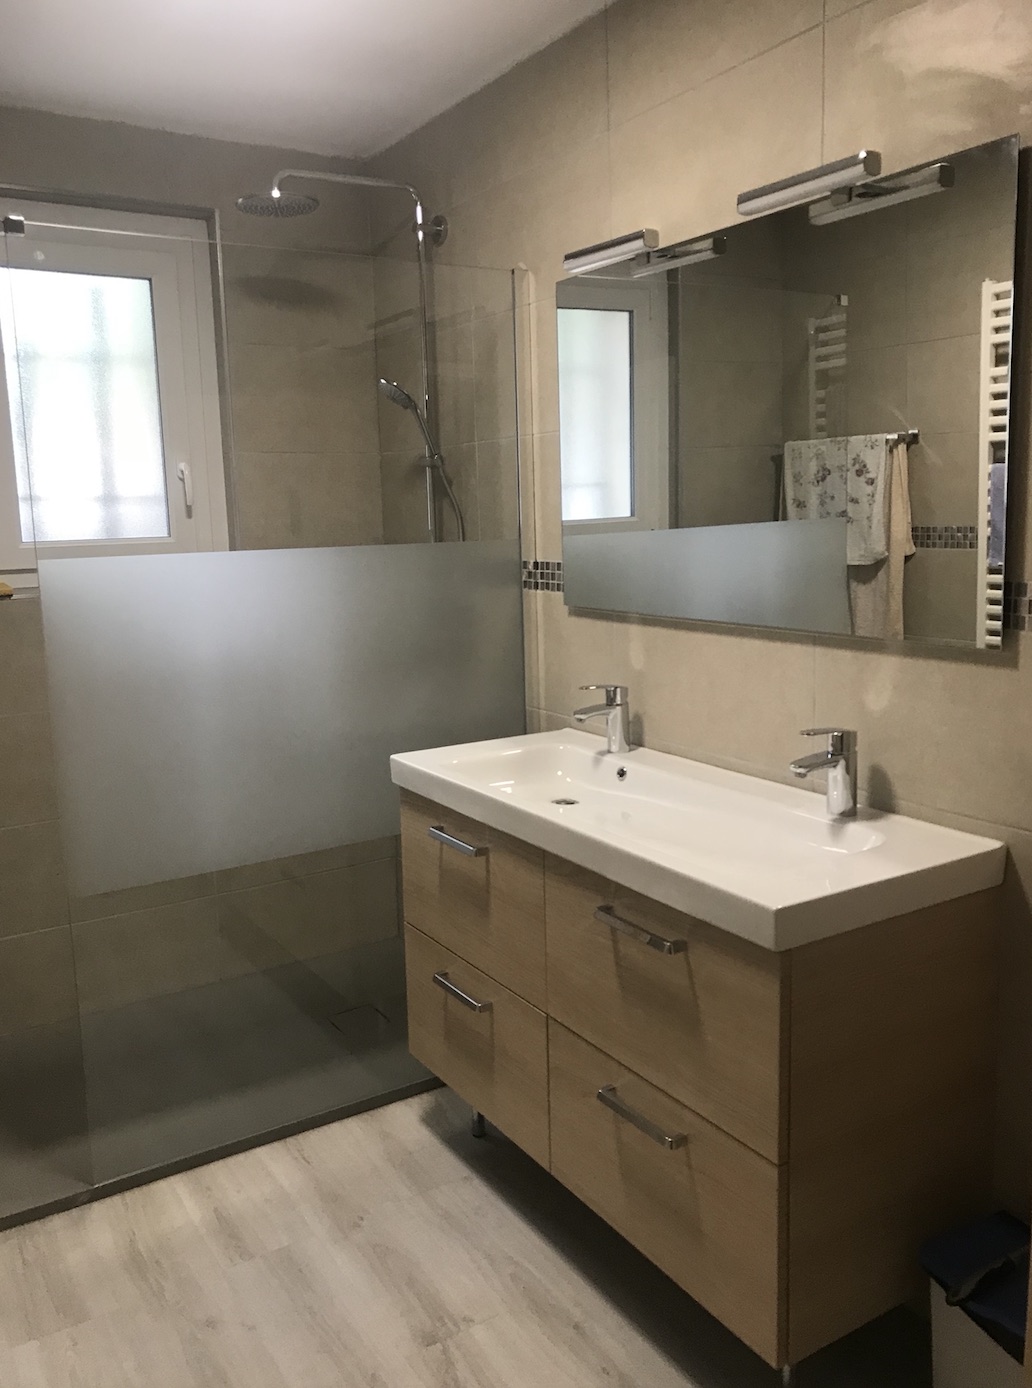 Rénovation salle de bain entière, transformation baignoire en douche italienne